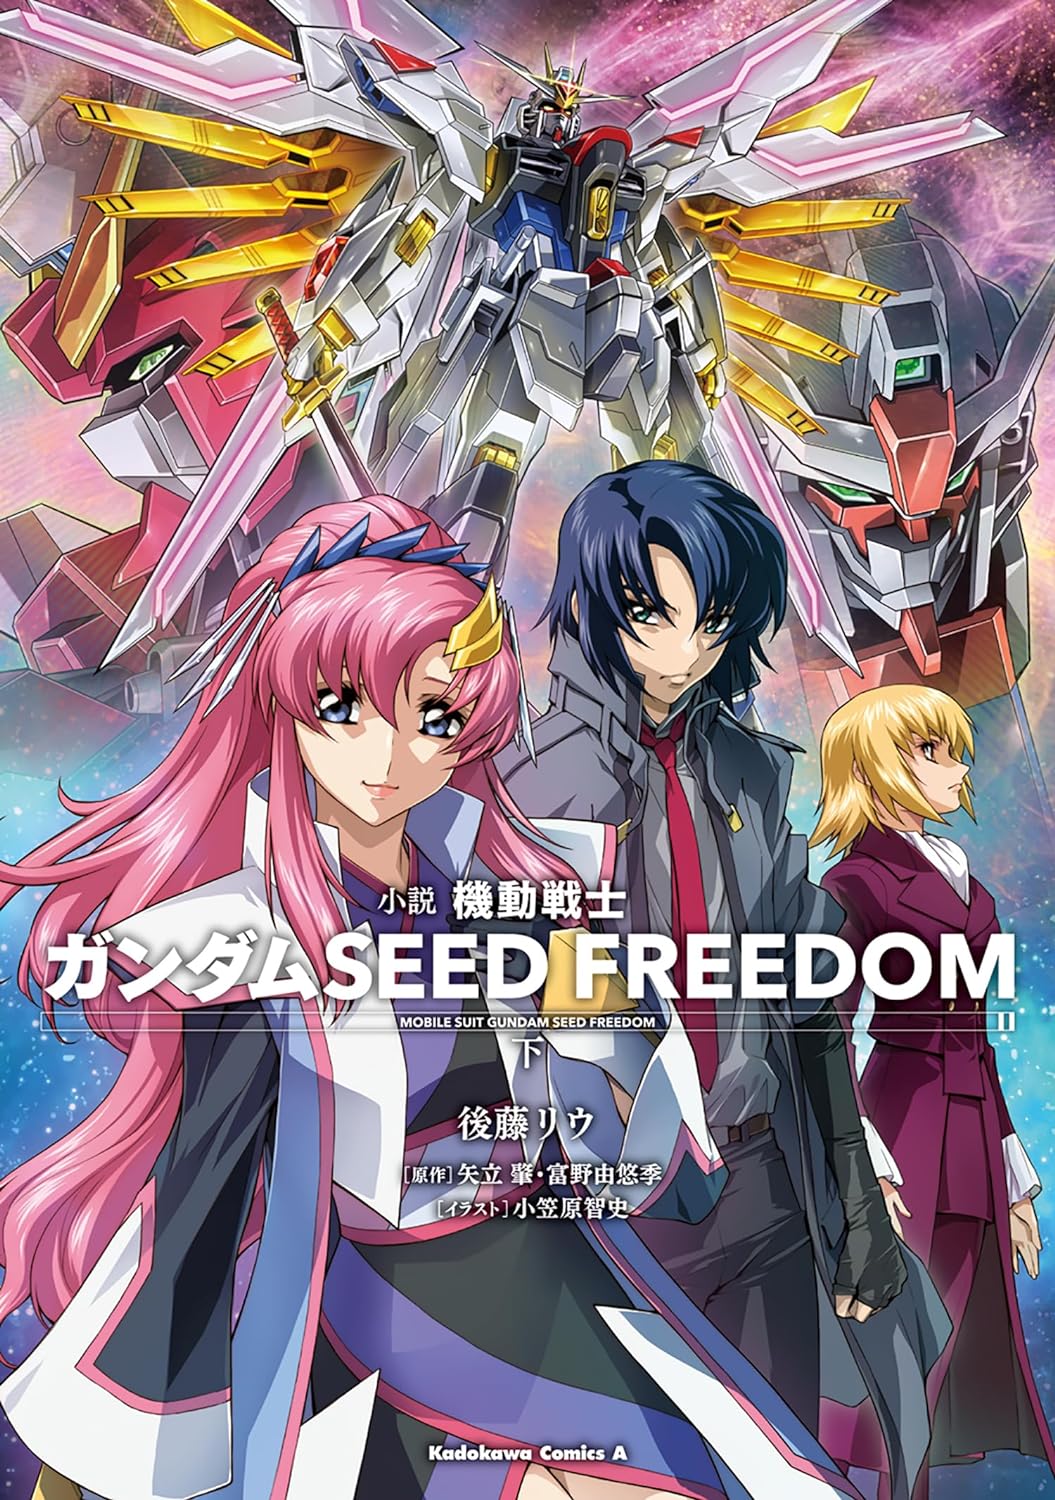 Mobile Suit Gundam SEED FREEDOM #2 / Novel